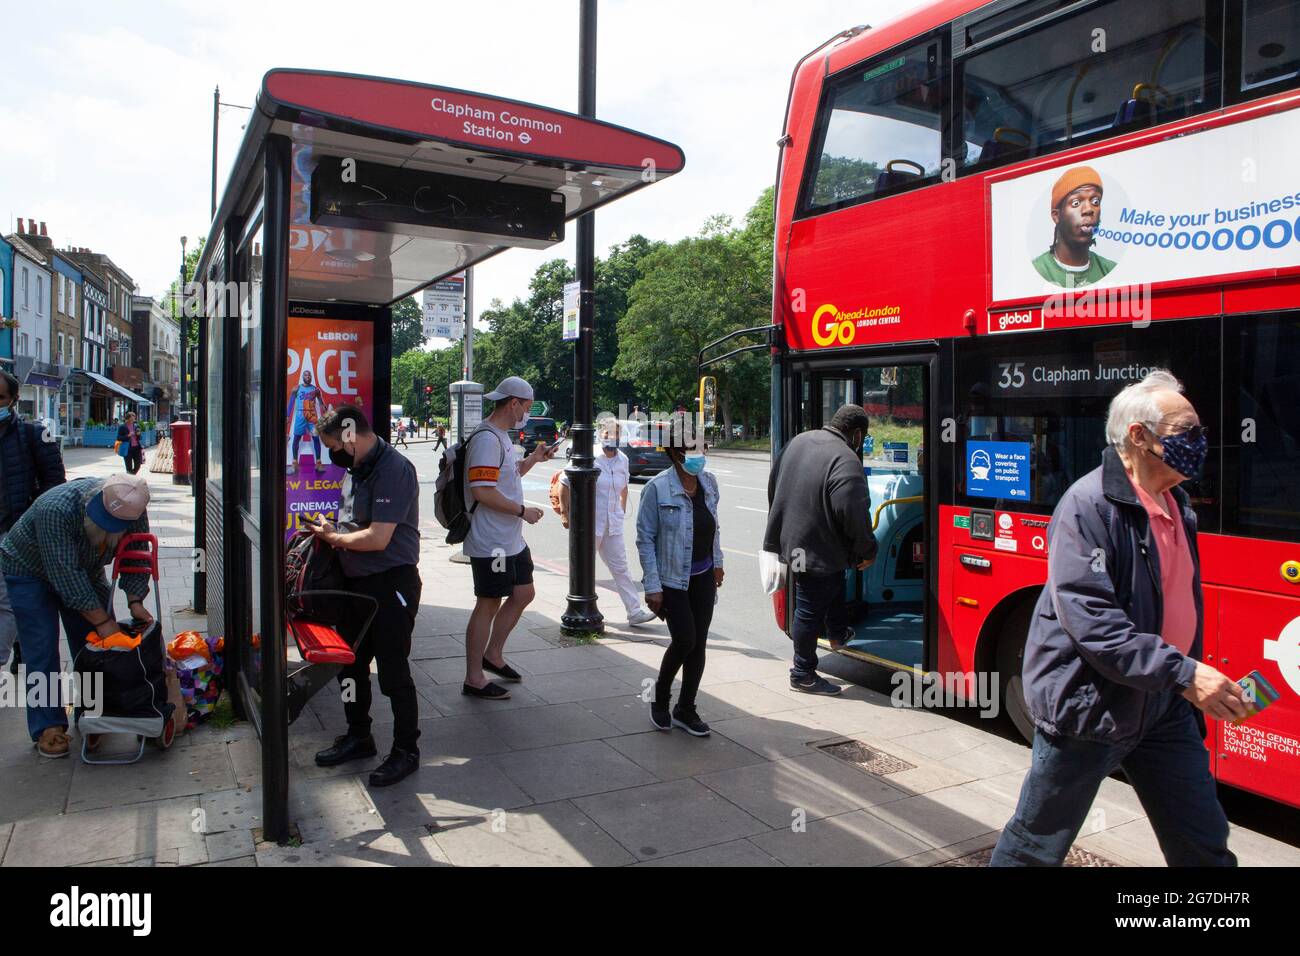 Londres, Reino Unido, 13 de julio de 2021: En los autobuses de Londres, la mayoría de las personas usan máscaras faciales, ya que actualmente es obligatorio, pero a partir del 19 de julio no será un requisito legal en virtud de los planes del gobierno para facilitar las normas de seguridad covid. Anna Watson/Alamy Live News Foto de stock